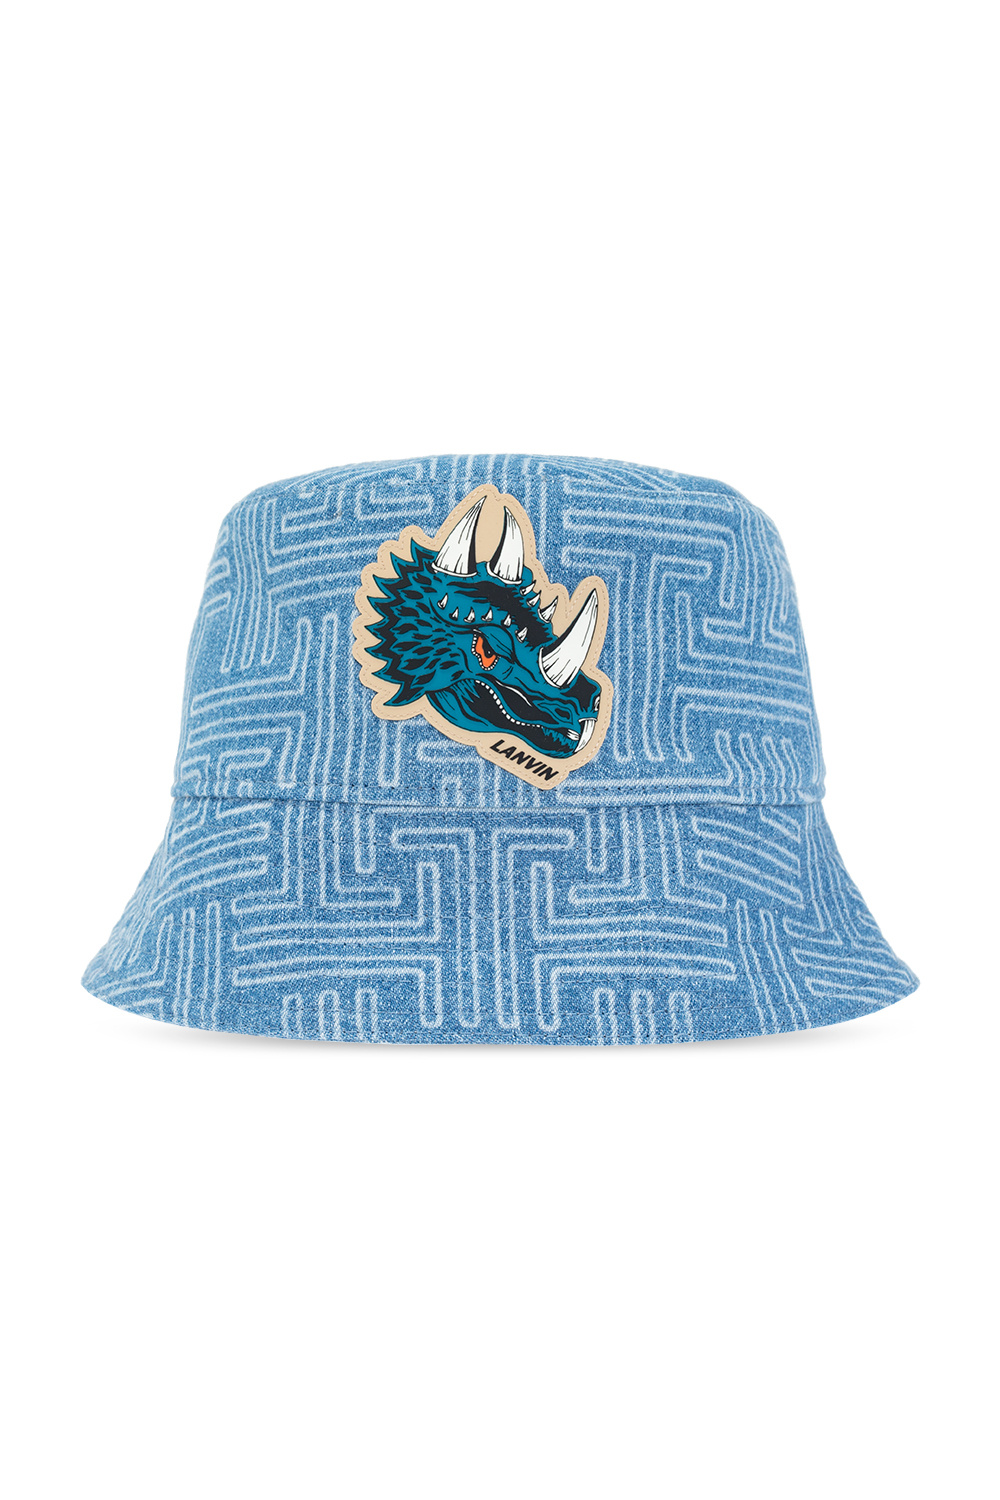 Lanvin Men's SCHEELS Utah Snapback Hat